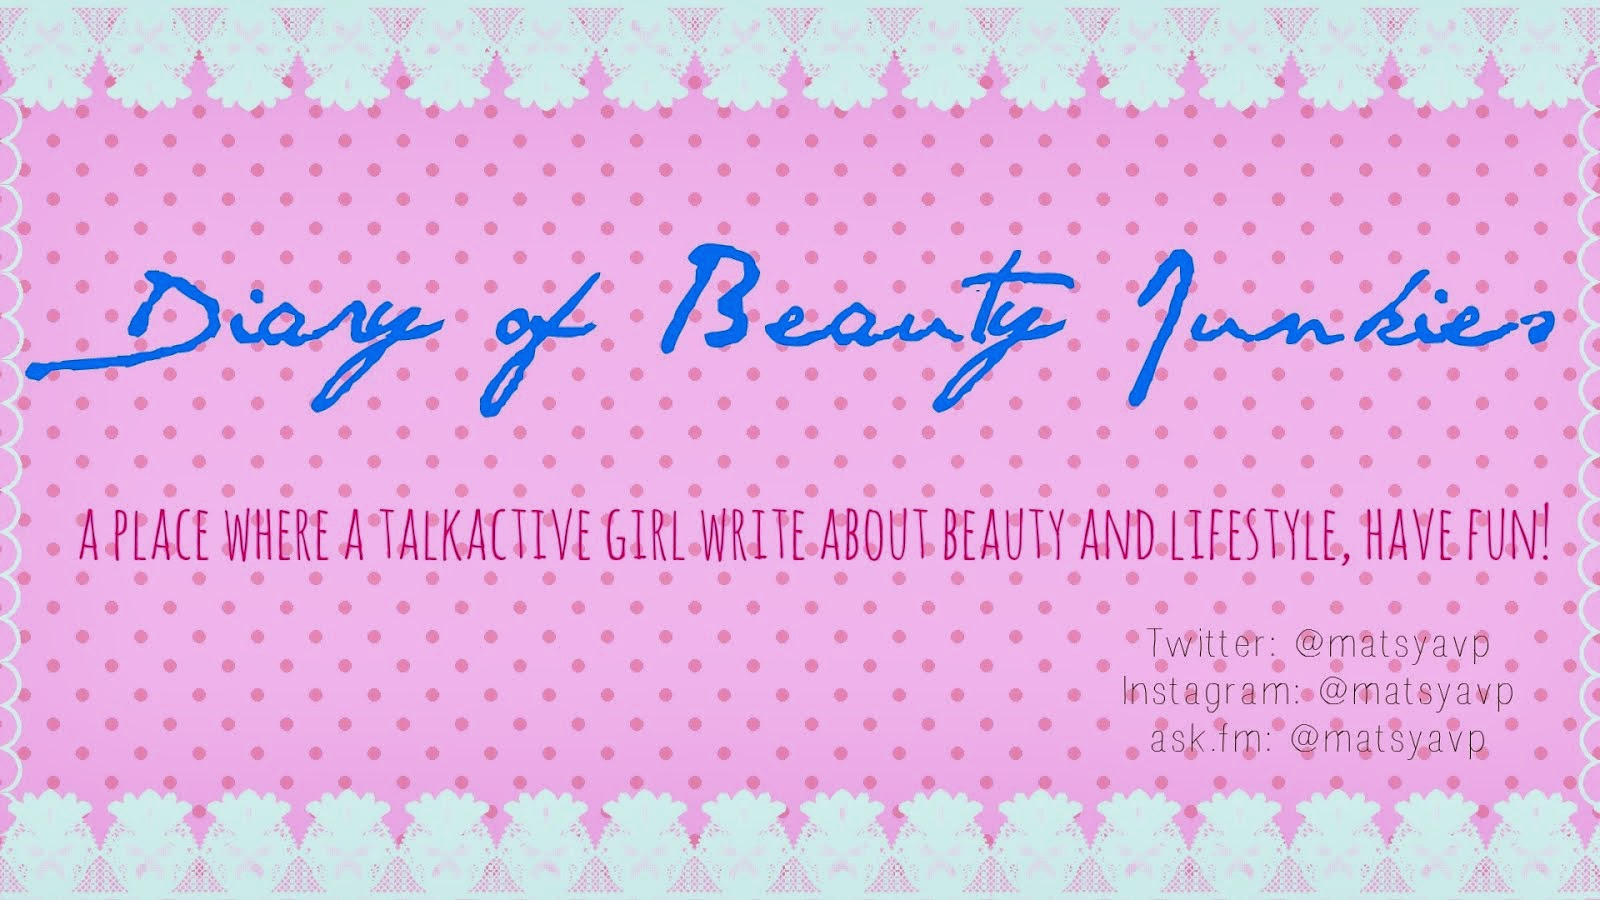 Diary of Beauty Junker